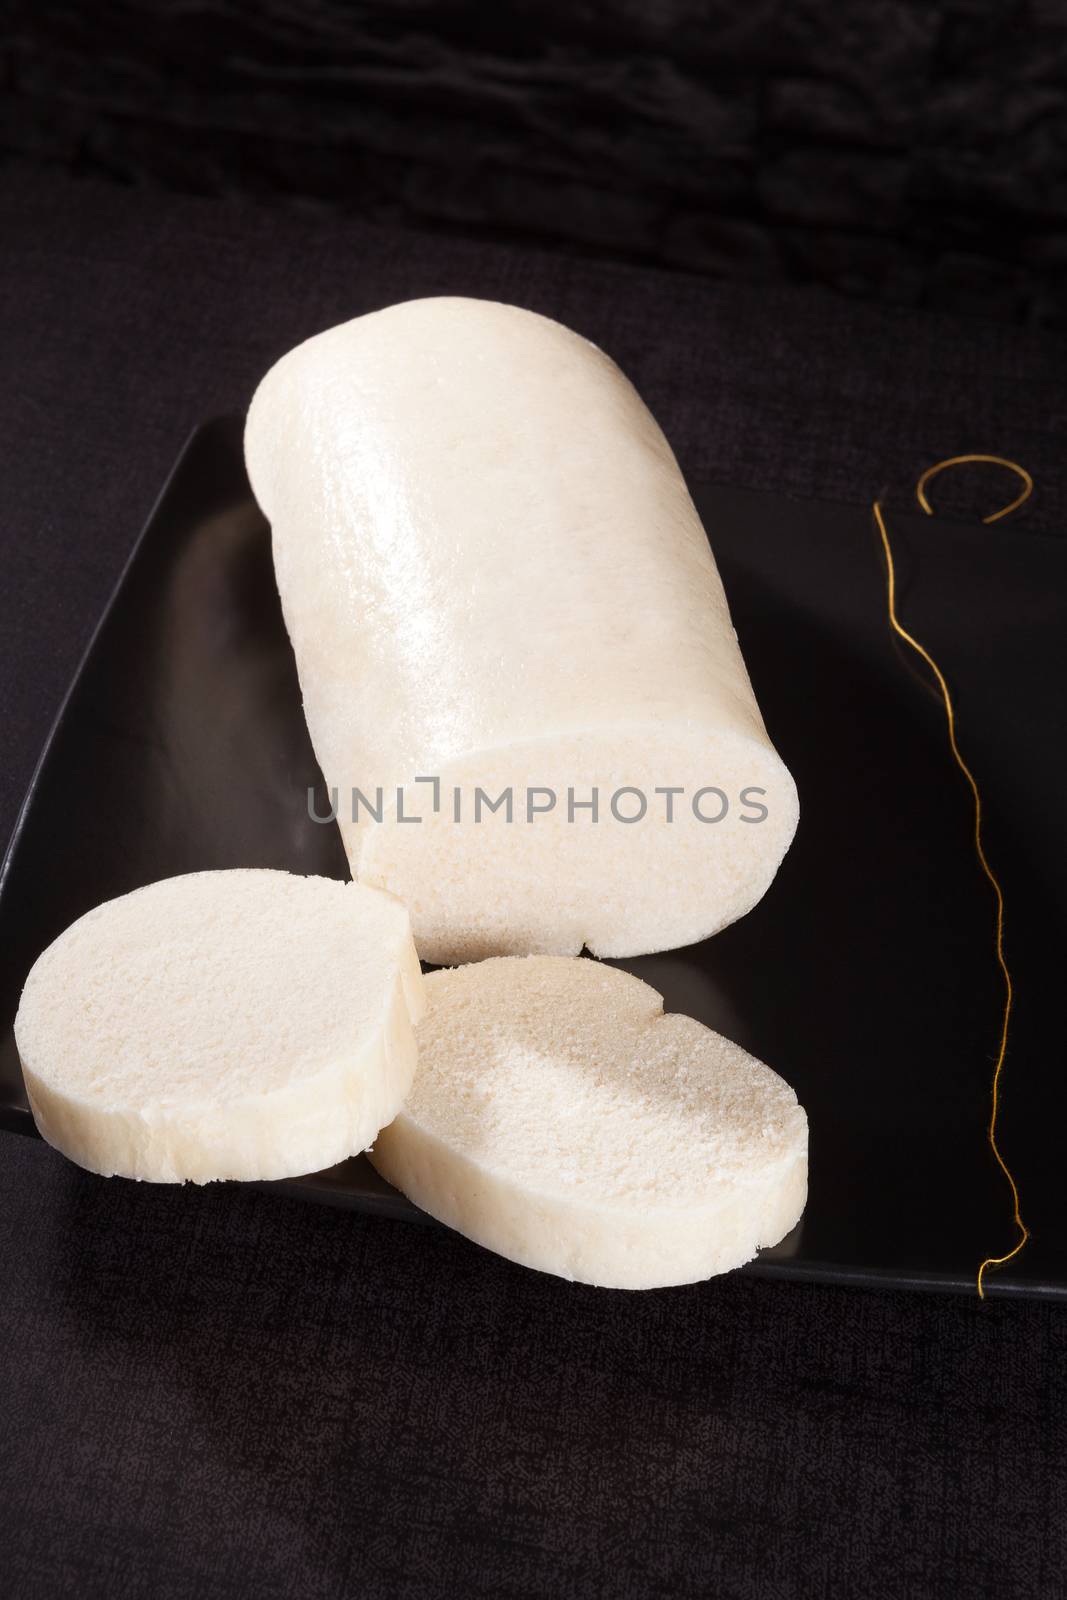 Traditional bread dumplings. by eskymaks